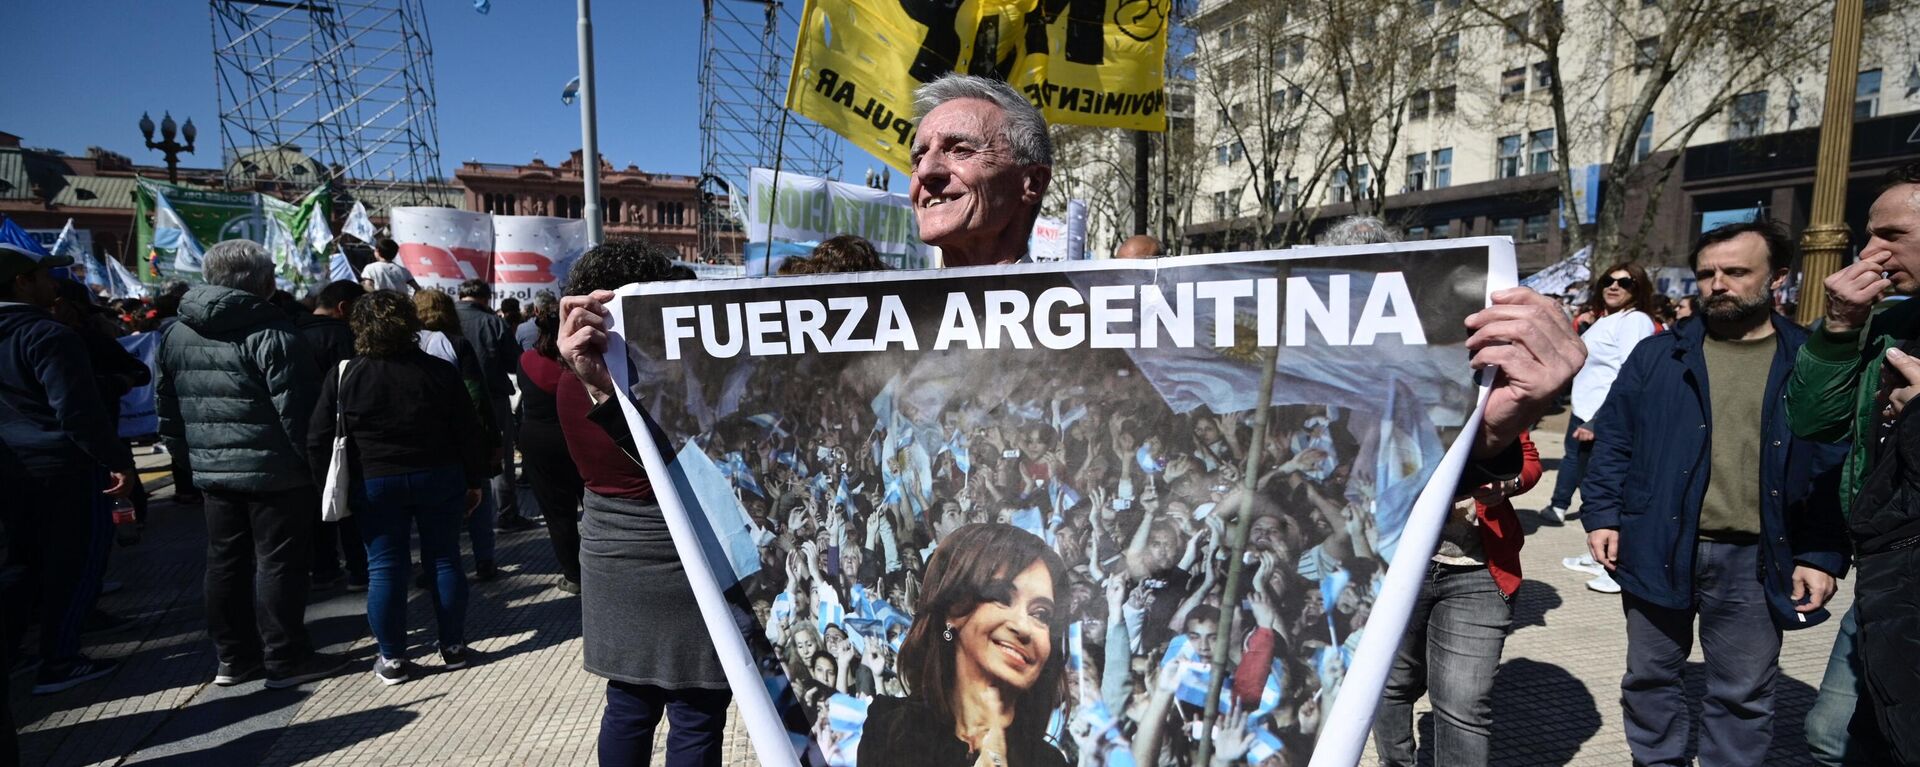 Manifestante leva cartaz em defesa da vice-presidente da Argentina, Cristina Fernández de Kirchner, em ato realizado em Buenos Aires após atentado, 2 de setembro de 2022 - Sputnik Brasil, 1920, 02.09.2022